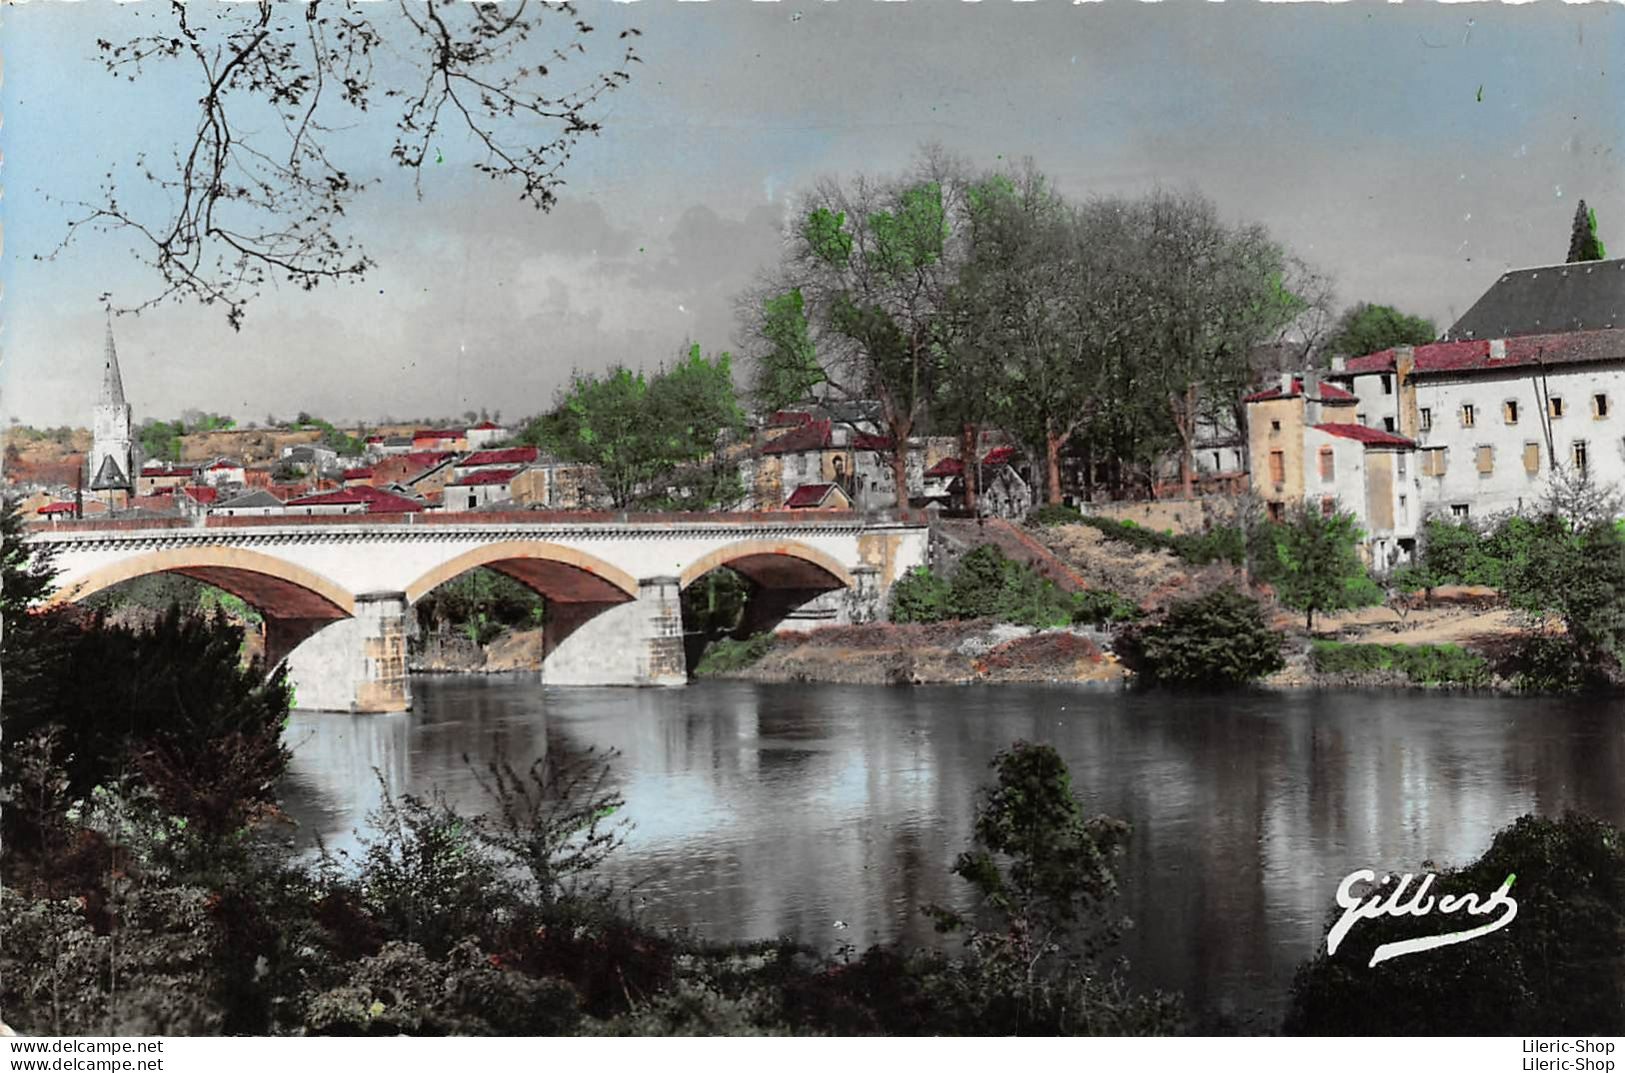 16500 CONFOLENS - Vue Sur La Vienne Et Le Grand Pont - Confolens